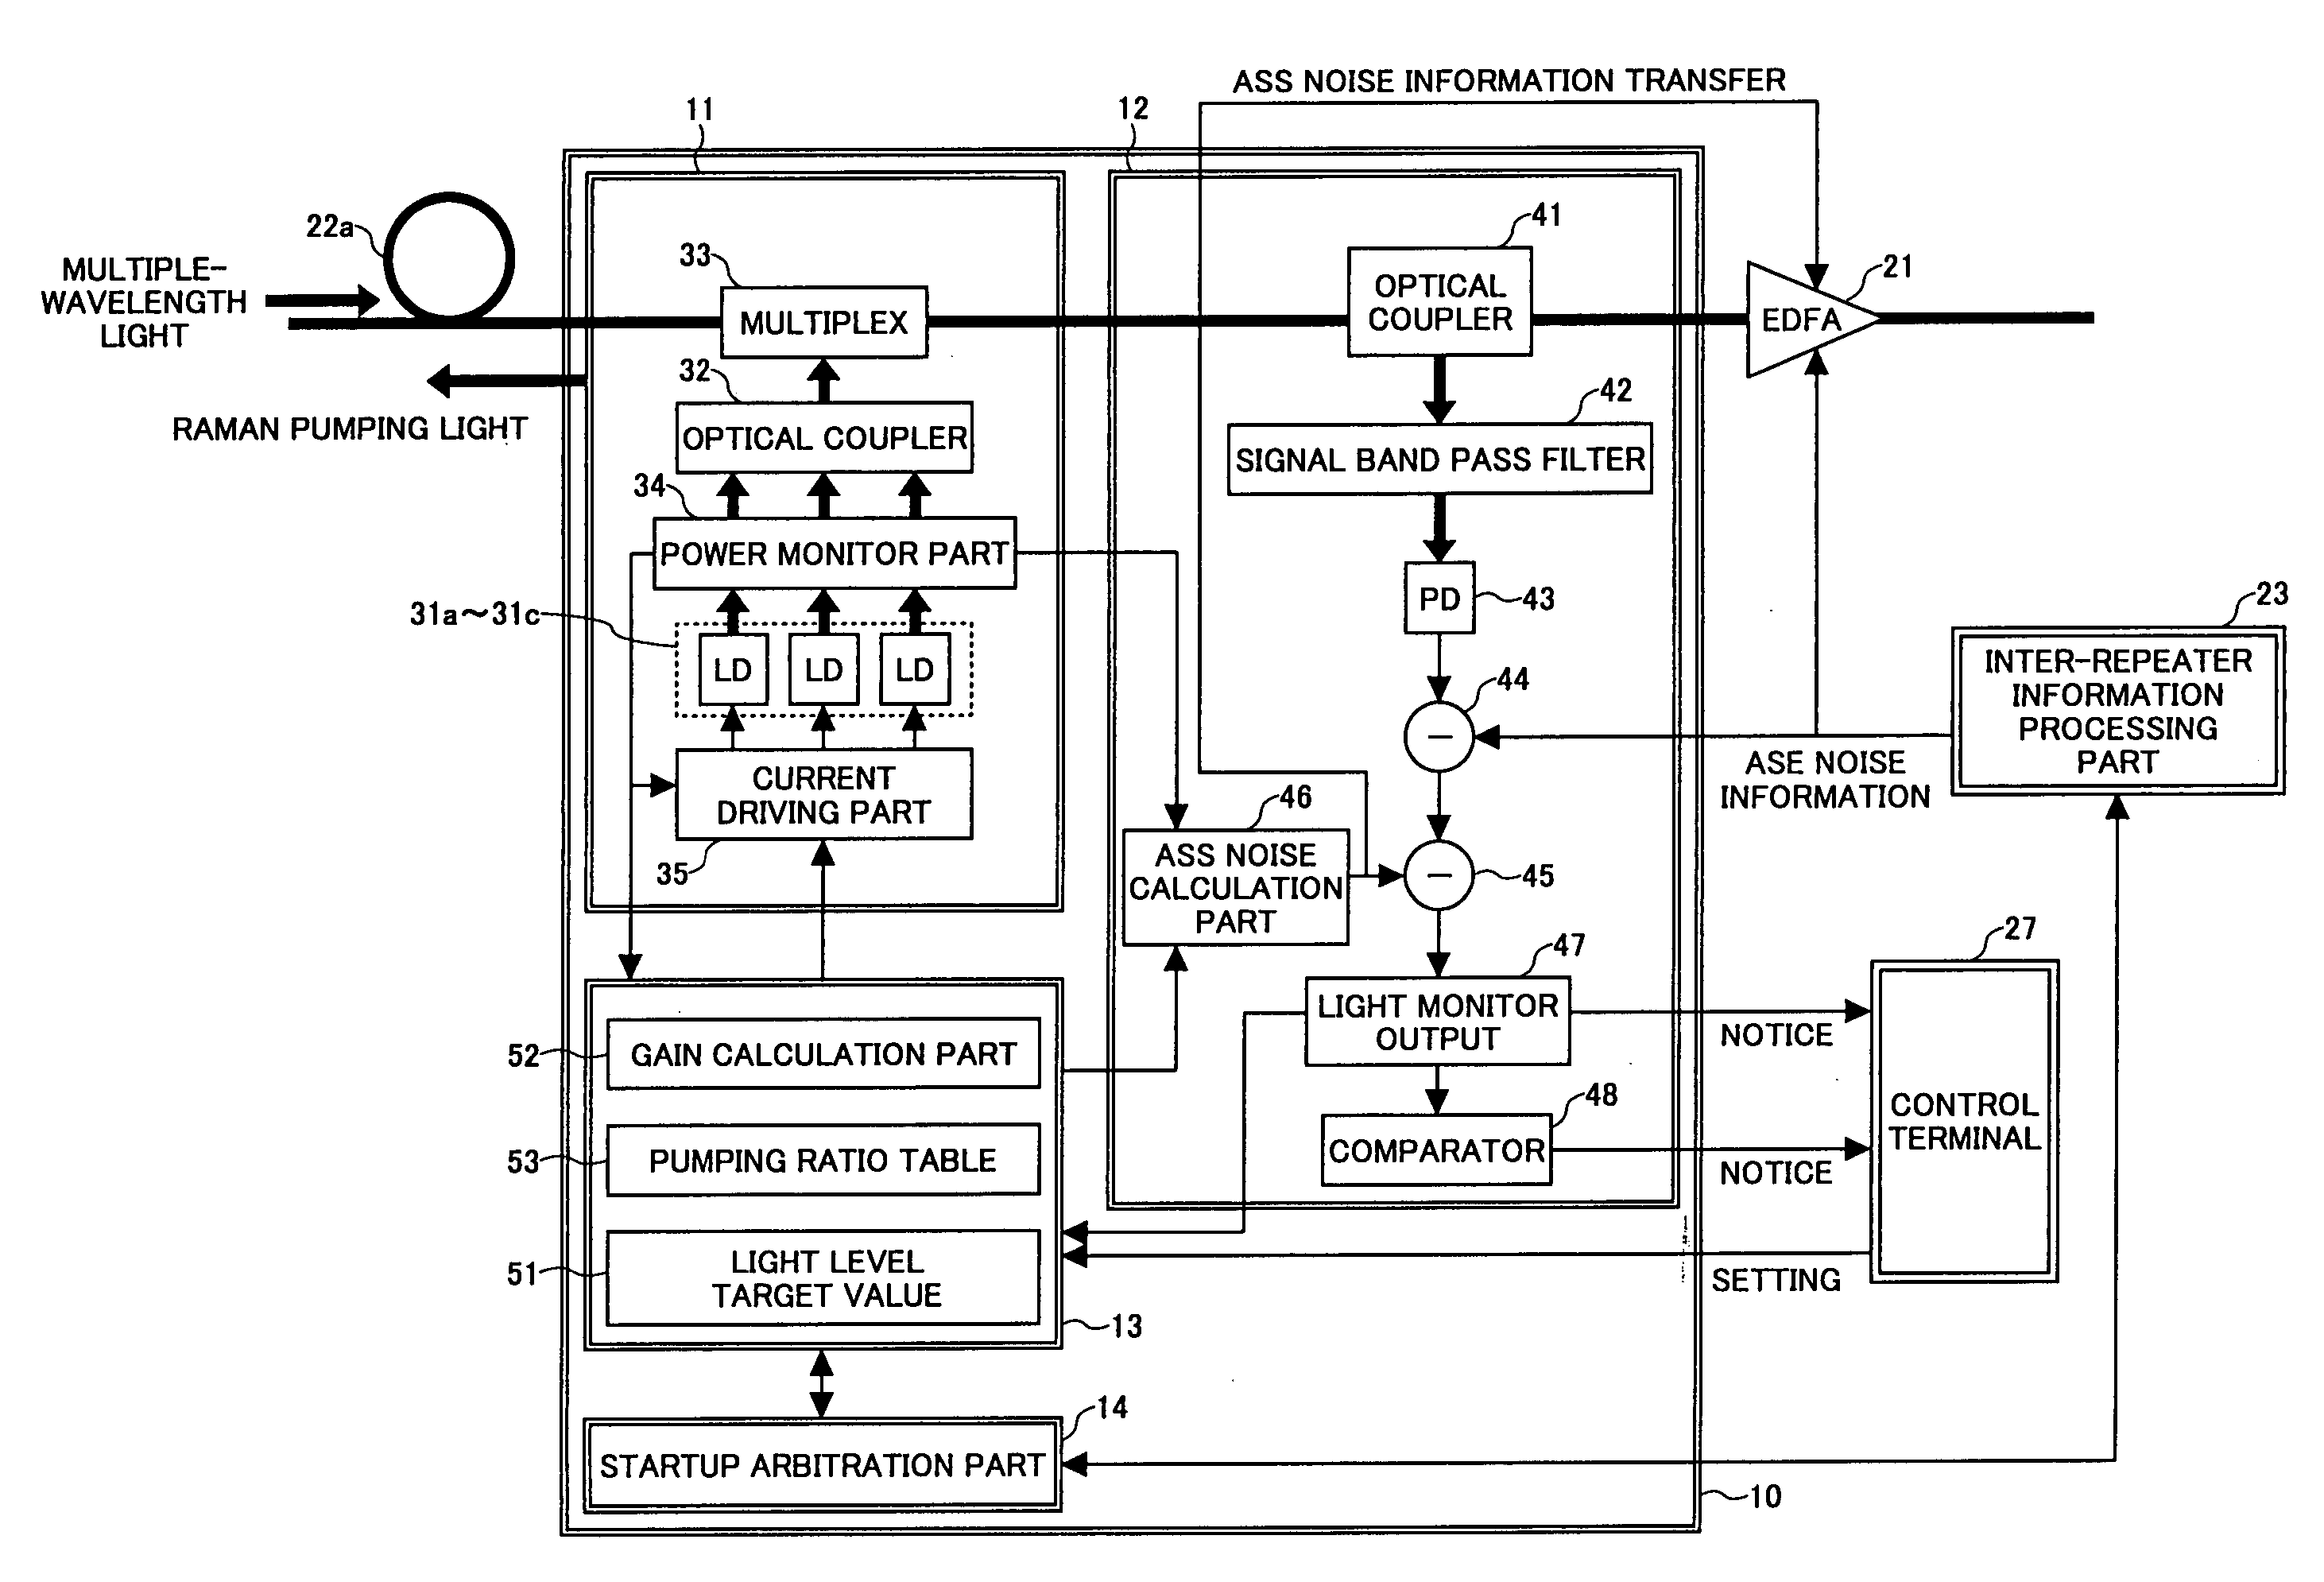 Raman amplifier and raman amplifier adjustment method